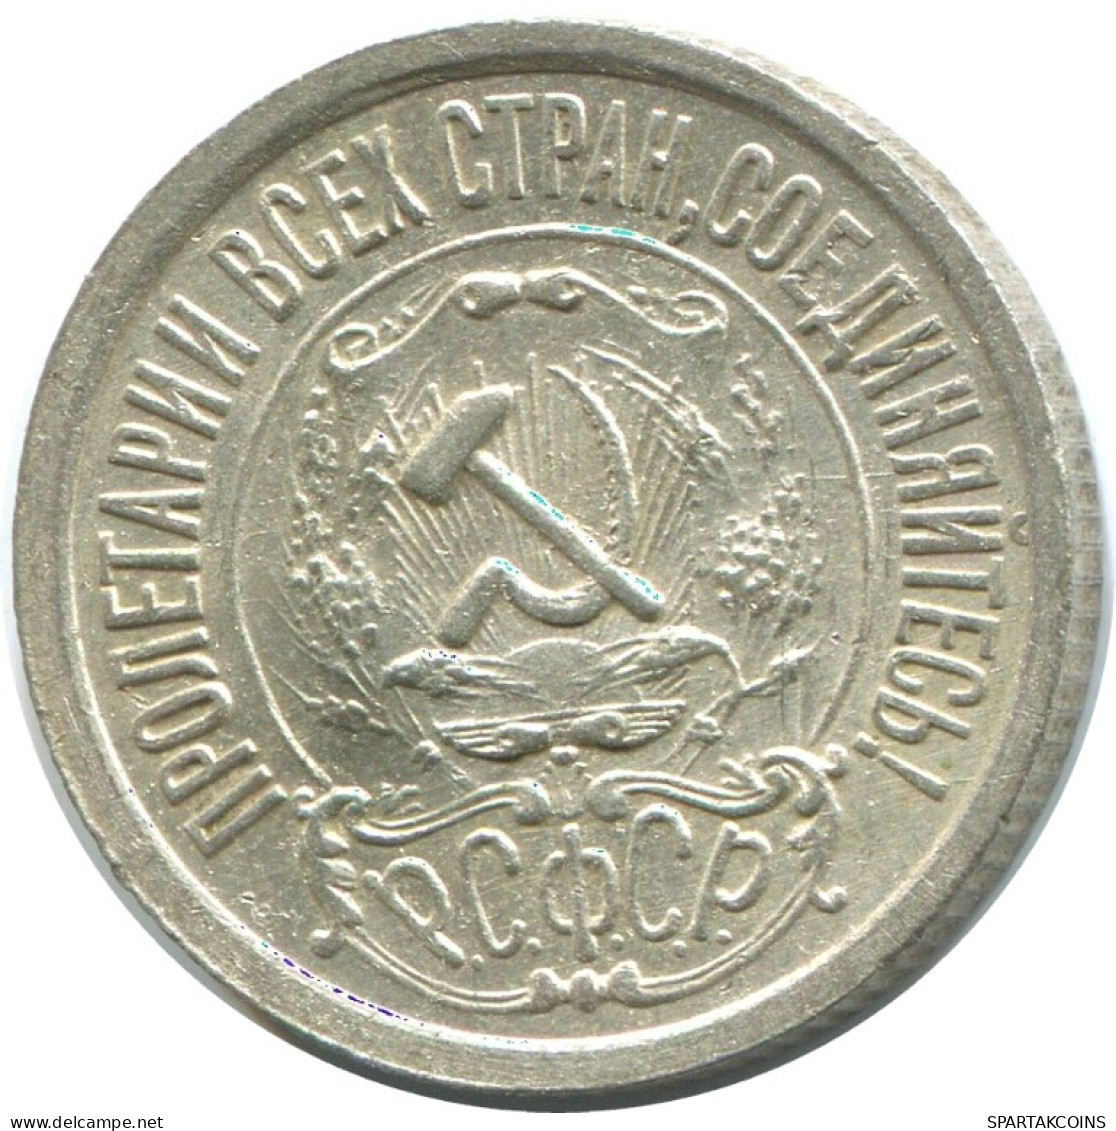 15 KOPEKS 1922 RUSSLAND RUSSIA RSFSR SILBER Münze HIGH GRADE #AF229.4.D.A - Russia